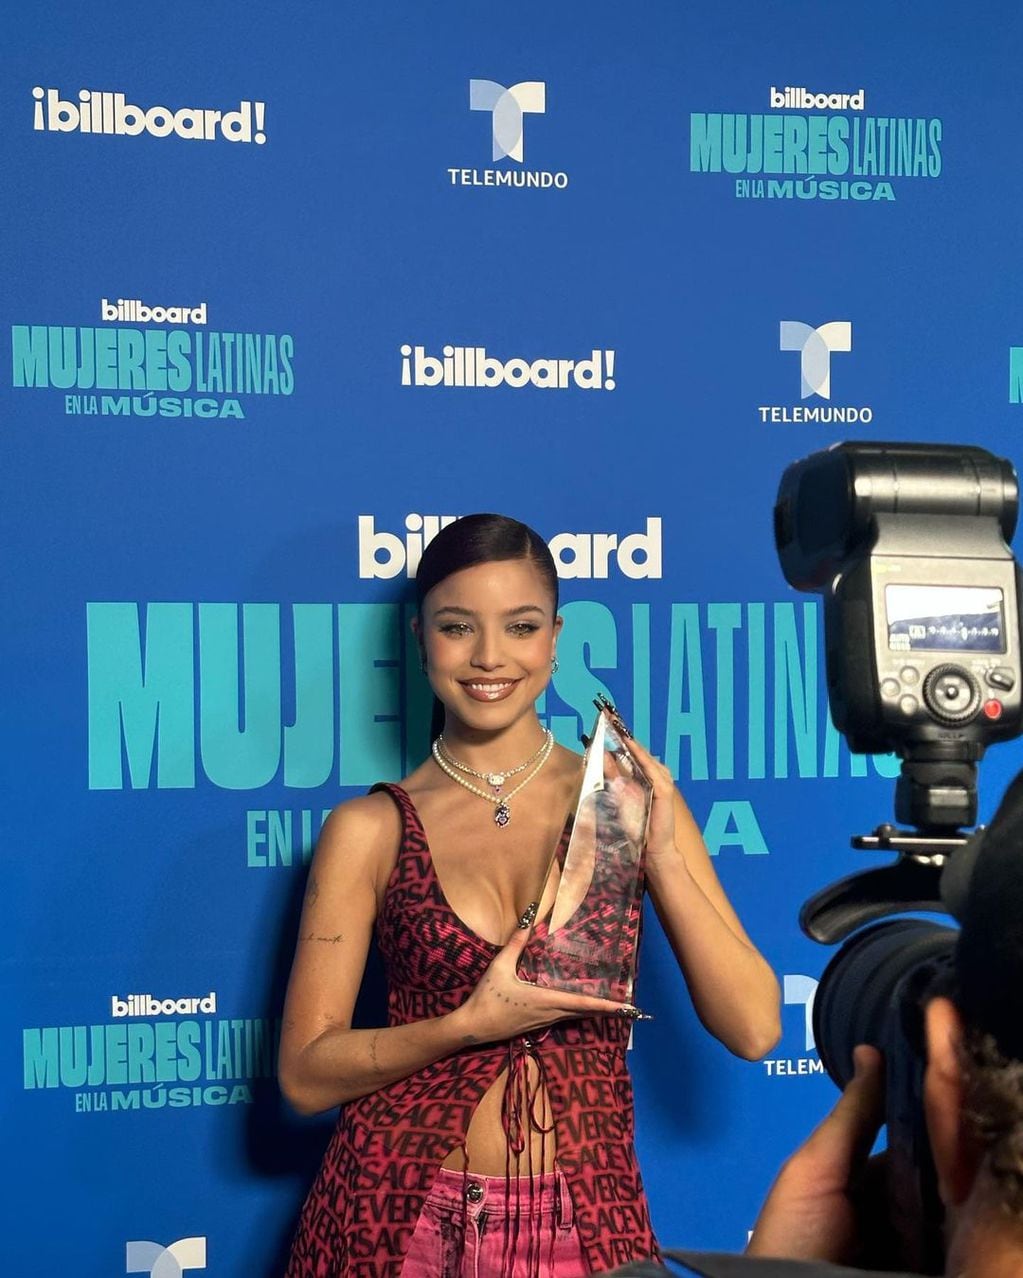 La cantante asistió a los Billboard con un vestido de mucha piel.